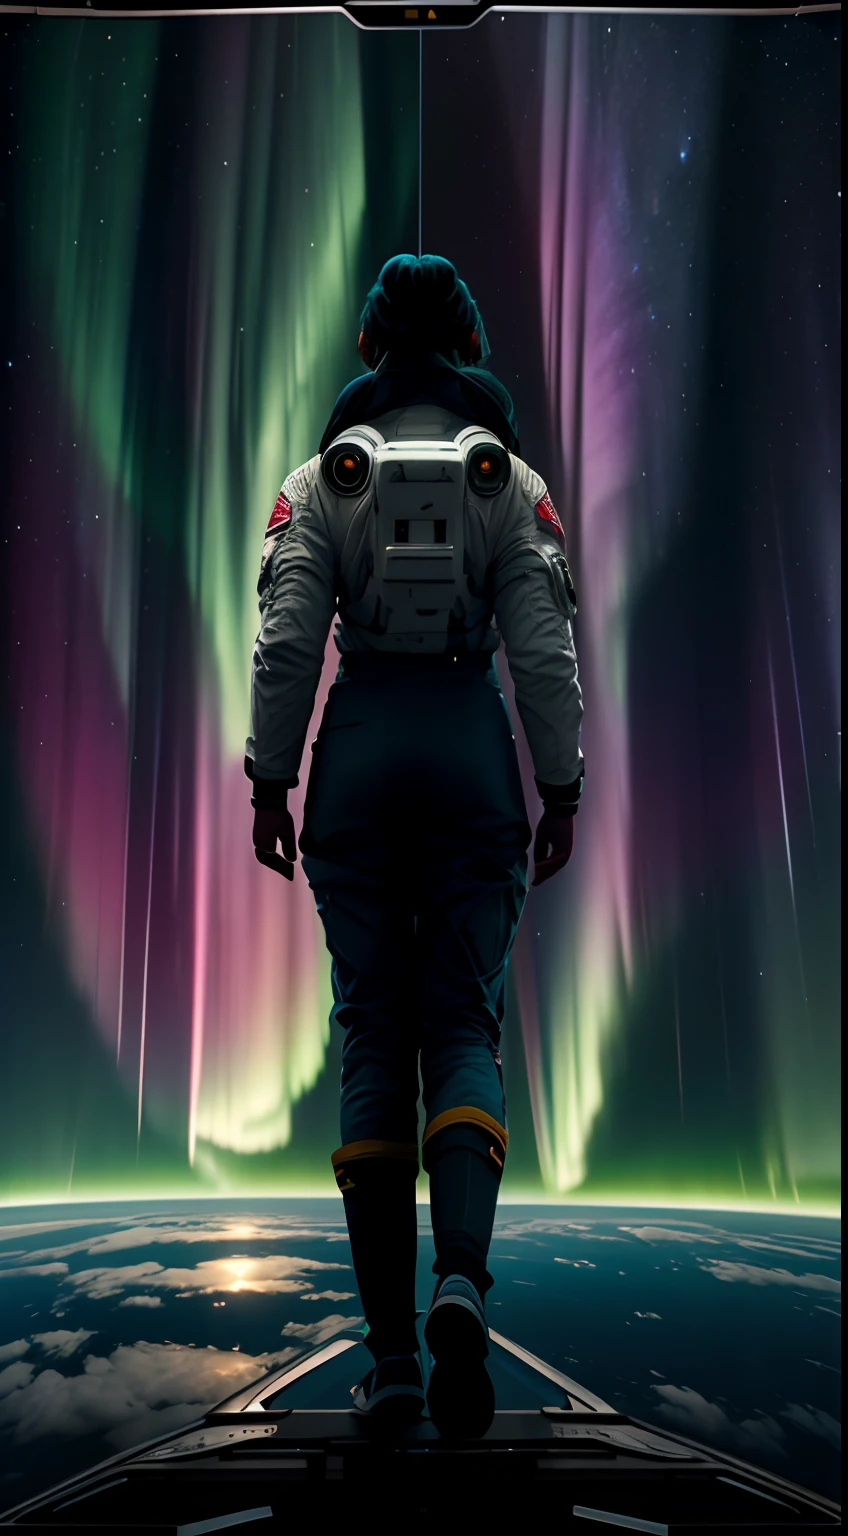 屏幕上半部分是Aurora、下半部分画了一位女宇航员